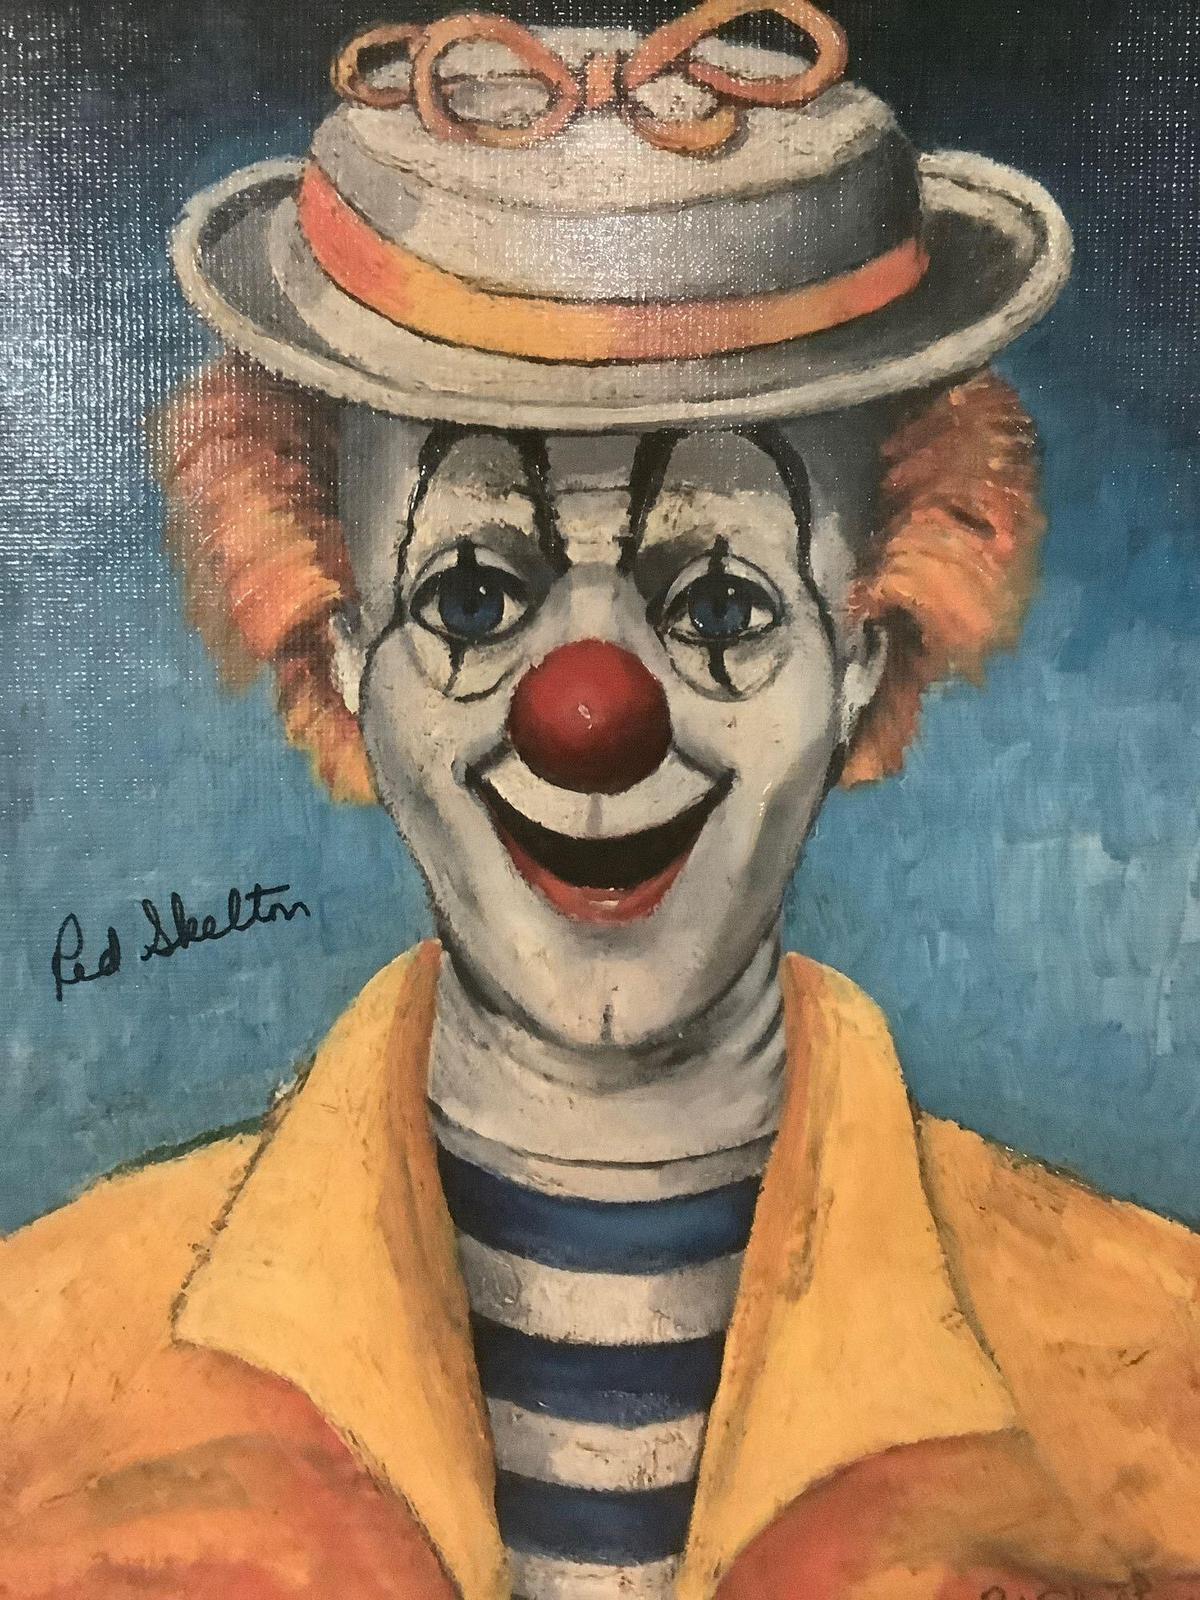 Girl Clown - framed Red Skelton ltd ed repro canvas print w/COA, #'d 330/5000 & signed